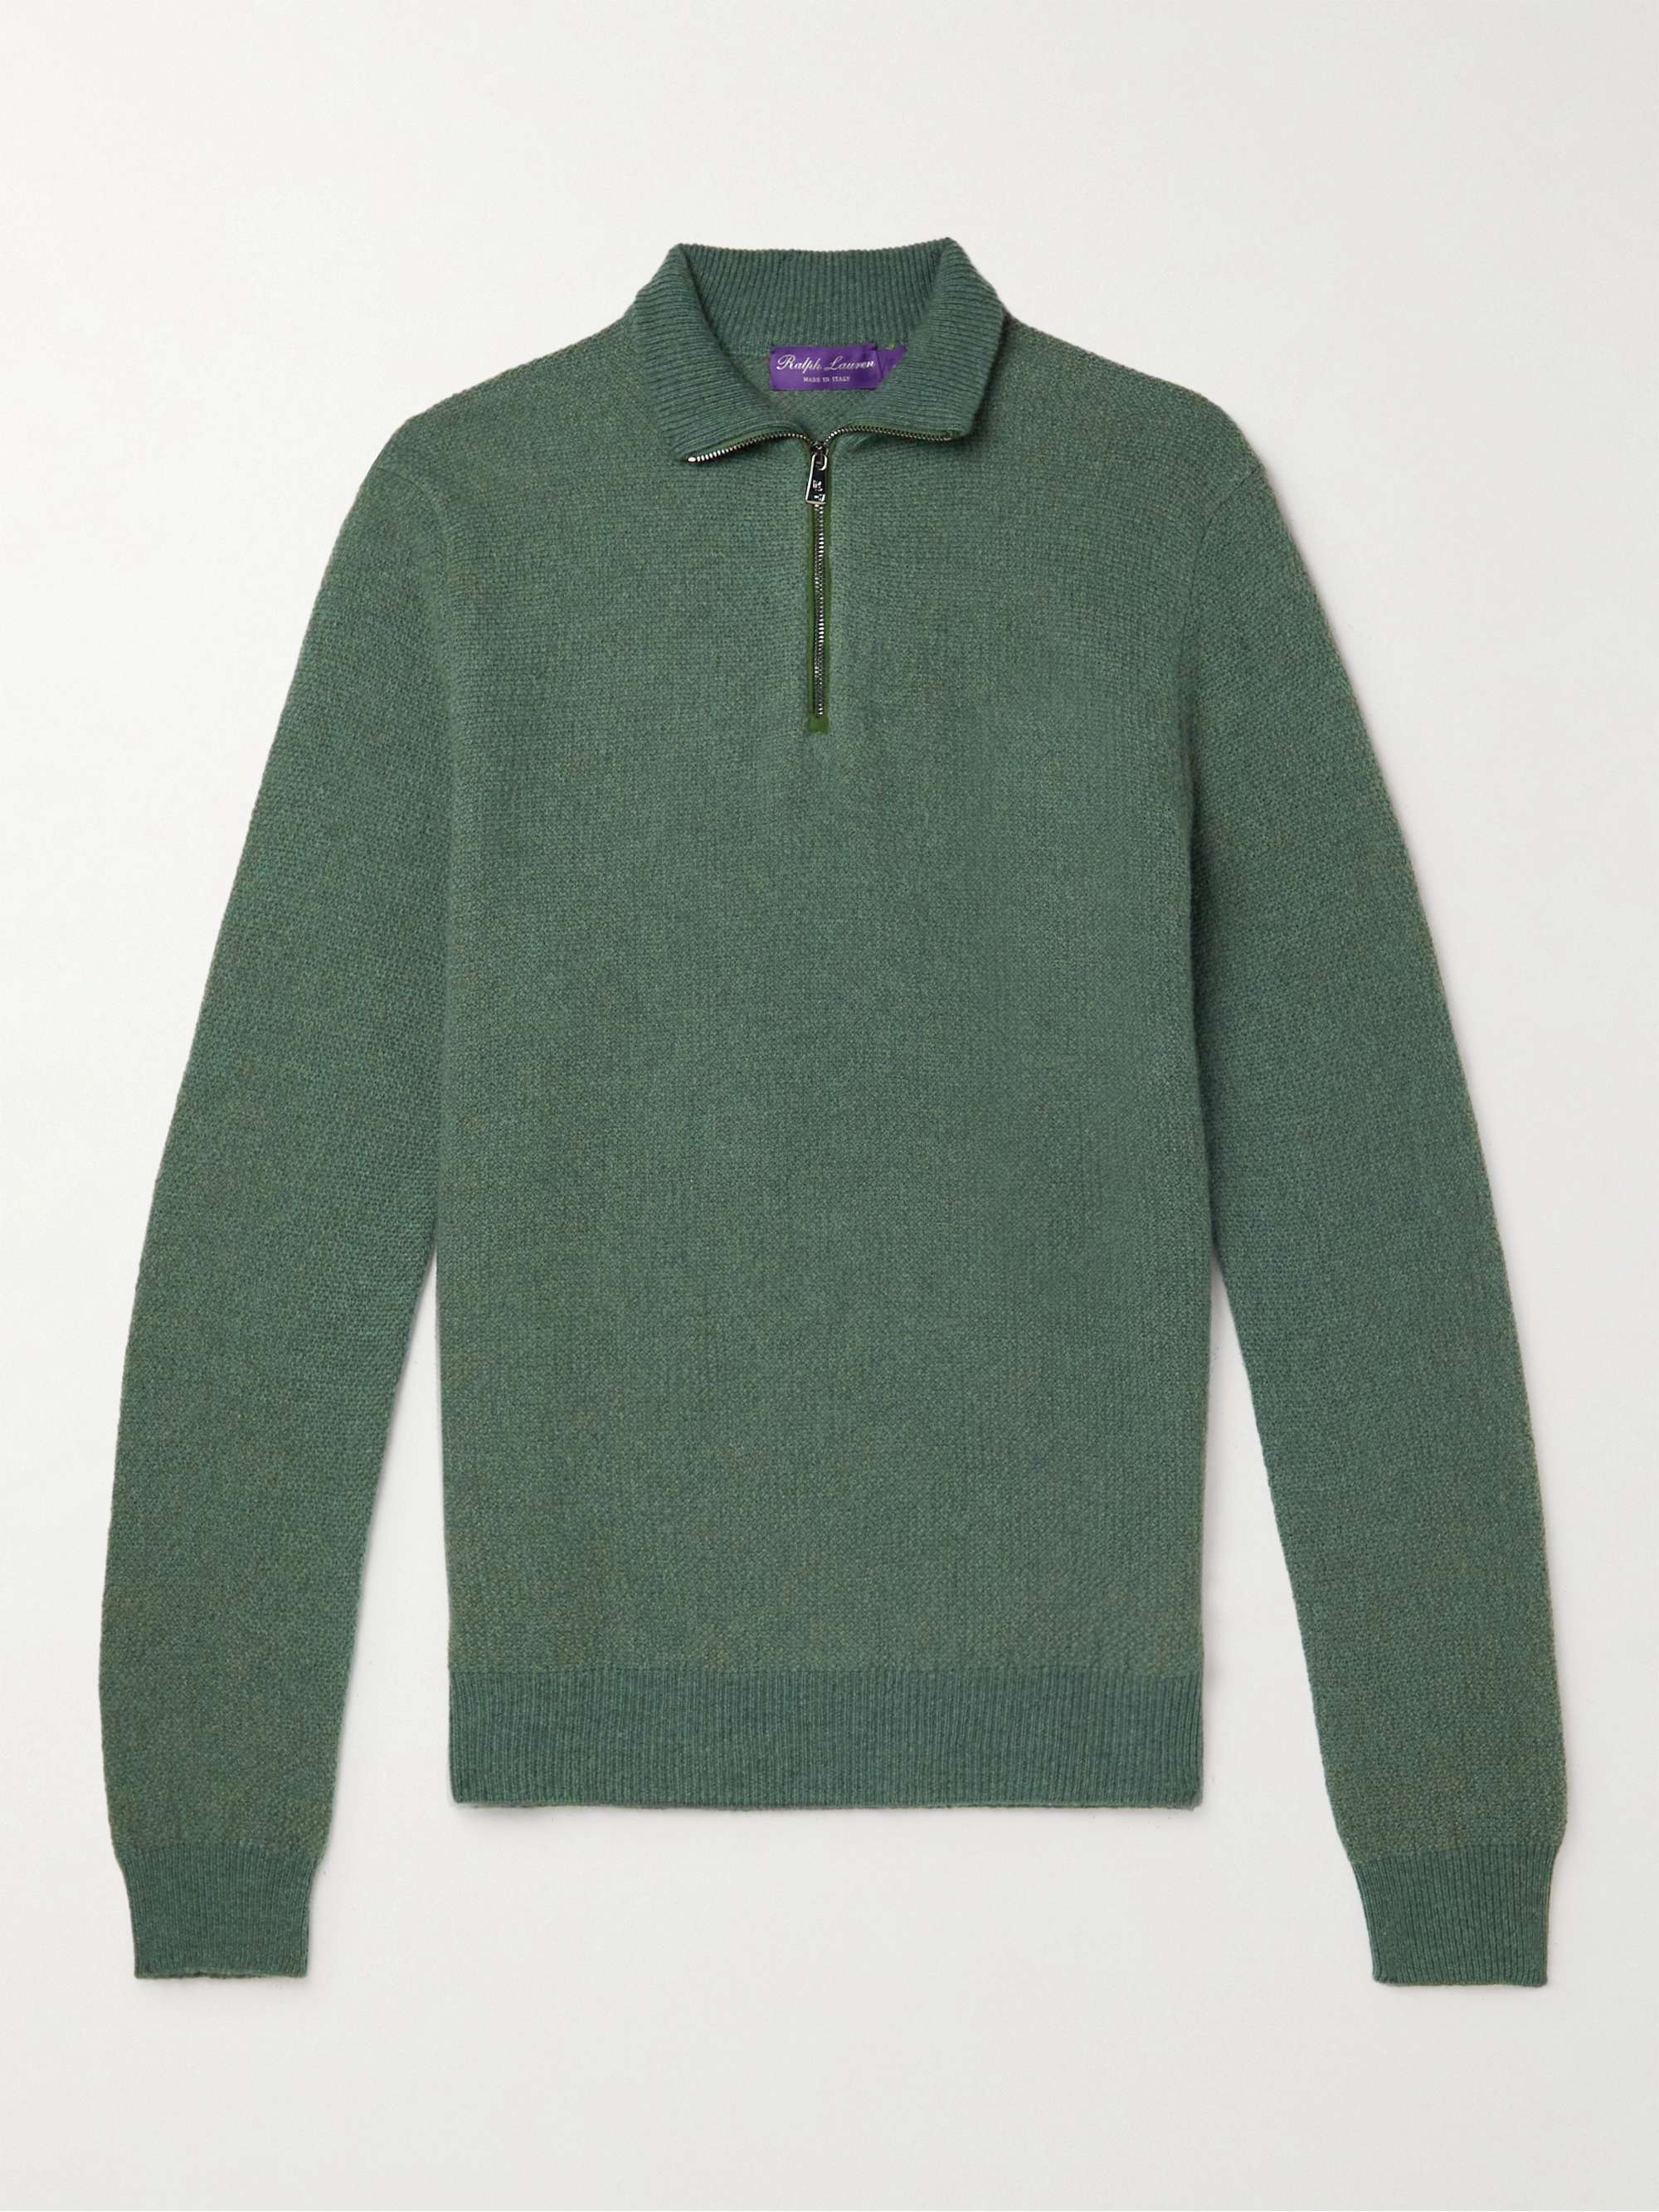 RALPH LAUREN PURPLE LABEL Suede-Trimmed Honeycomb-Knit Cashmere Half-Zip Sweater